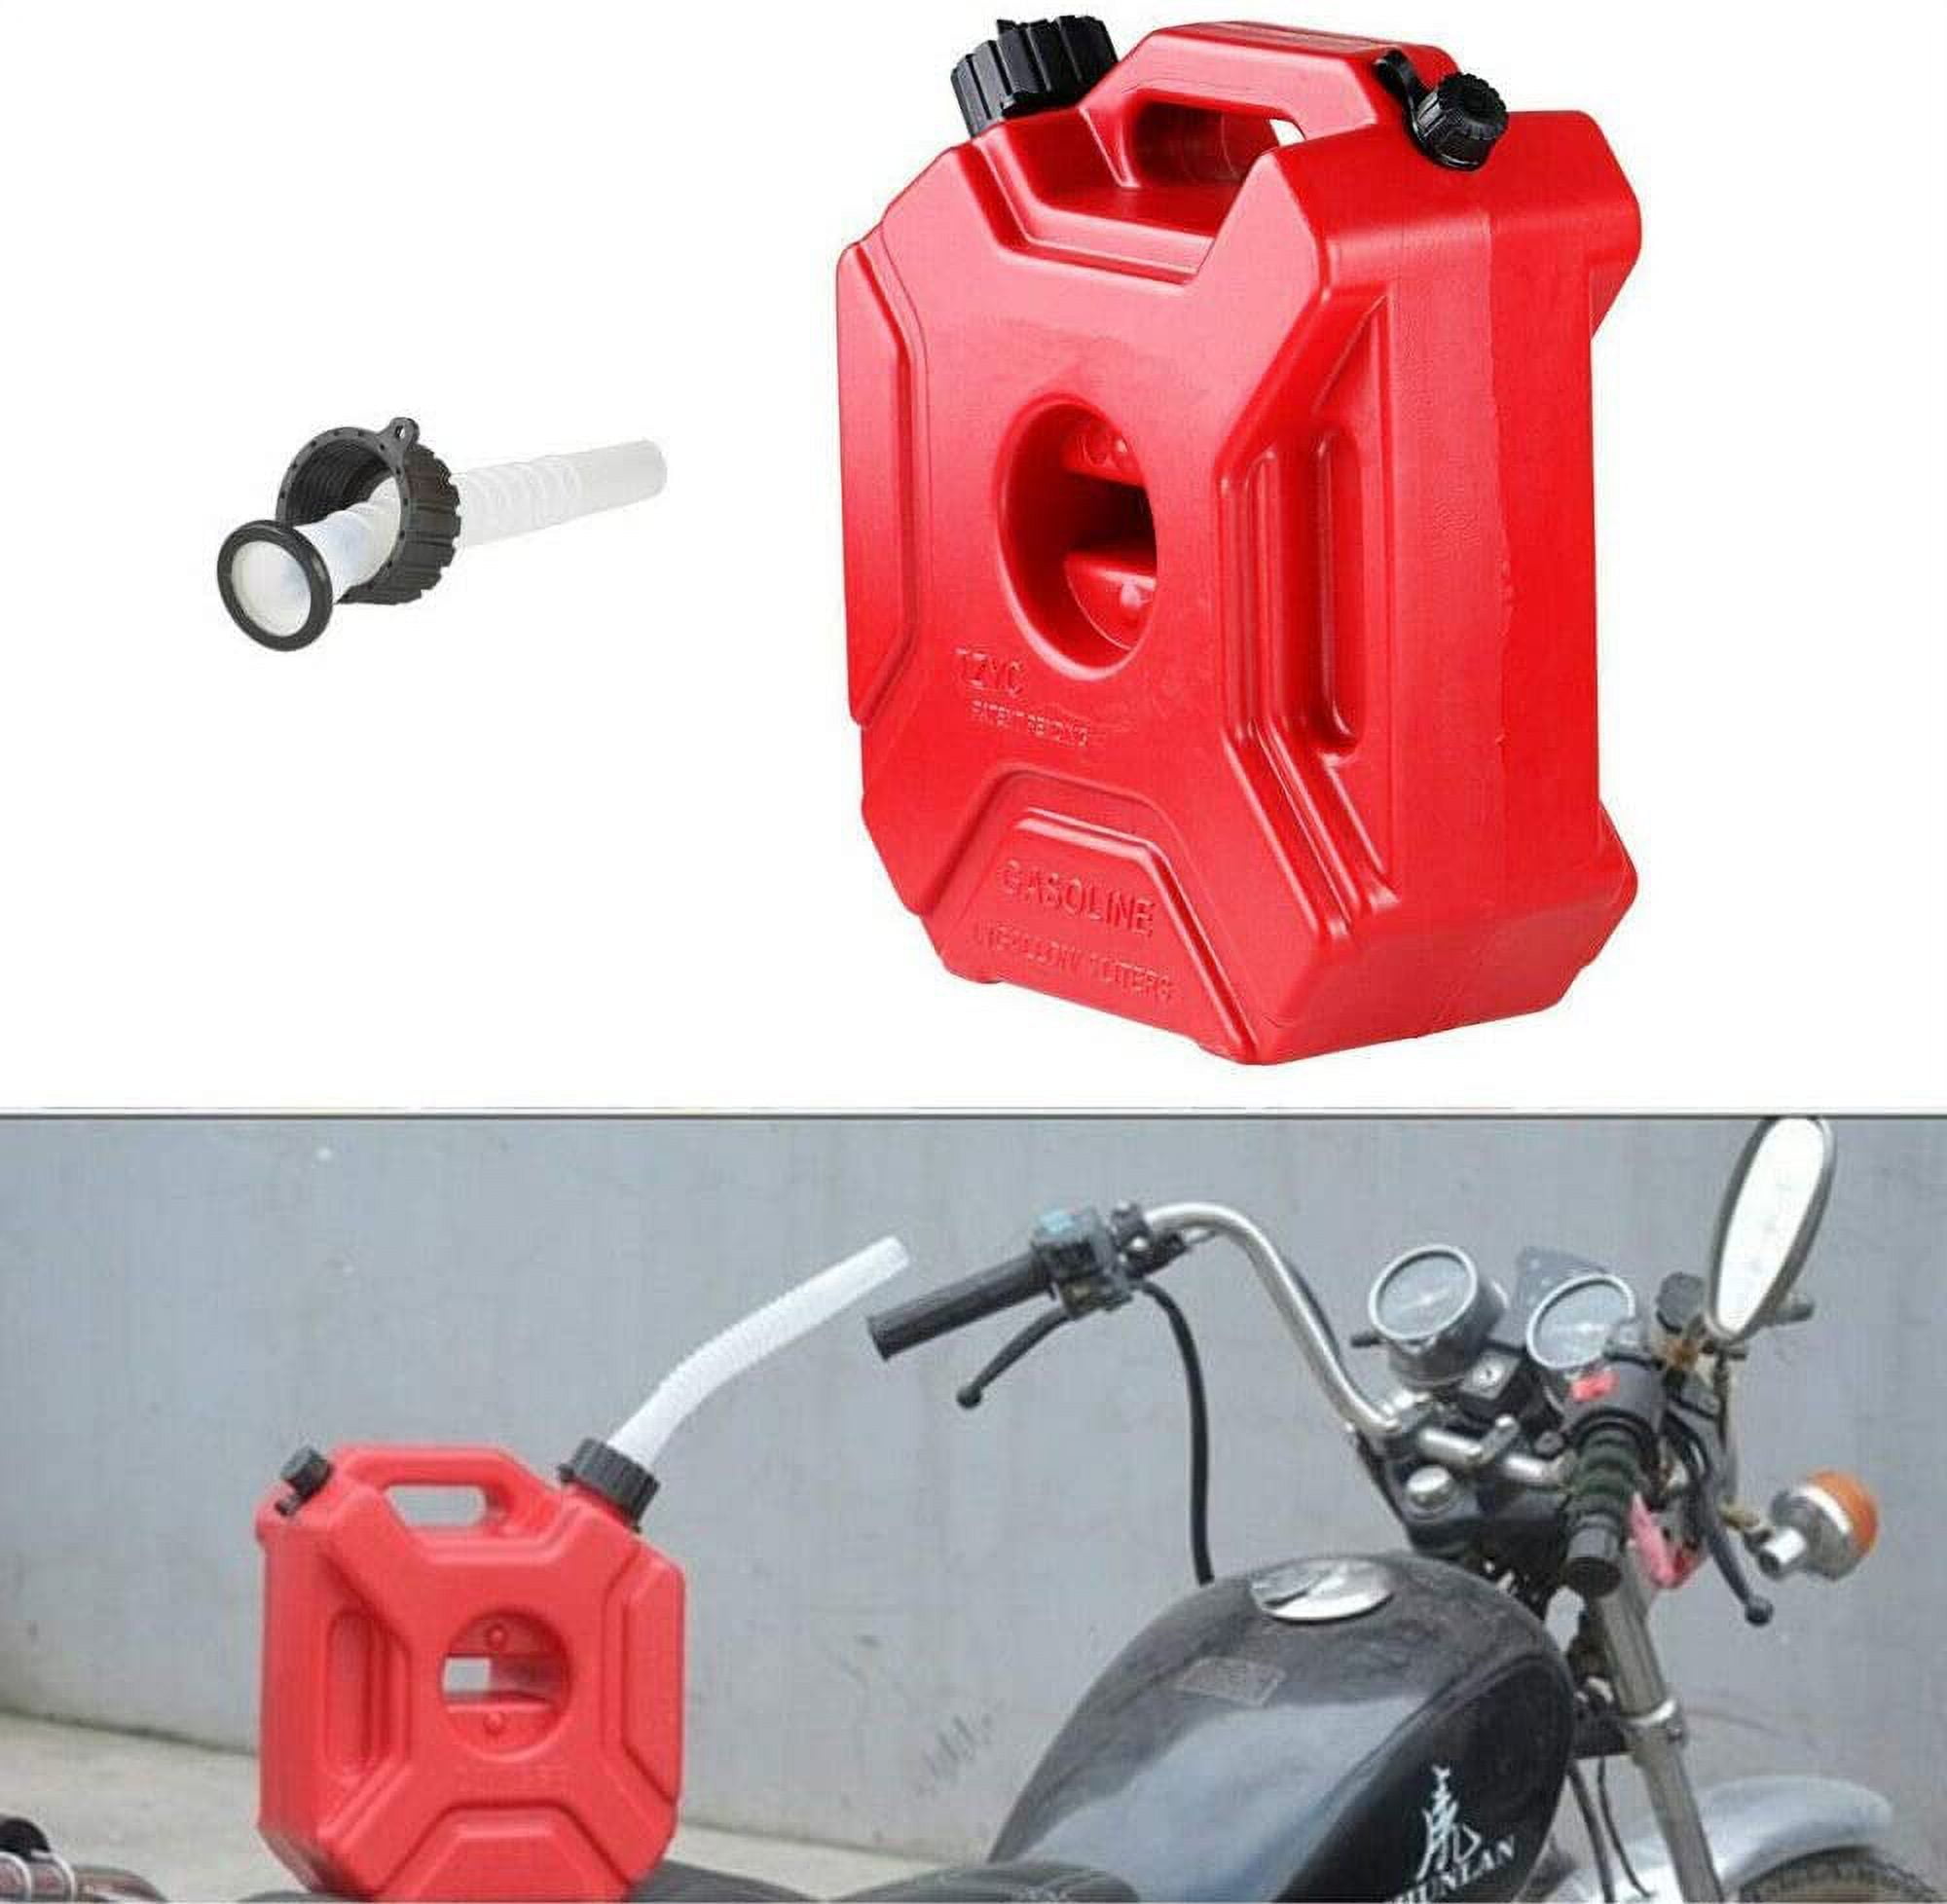 Miumaeov 5L/1.3Gal Portable Gas Fuel Tank ATV Off Road Motorcycle